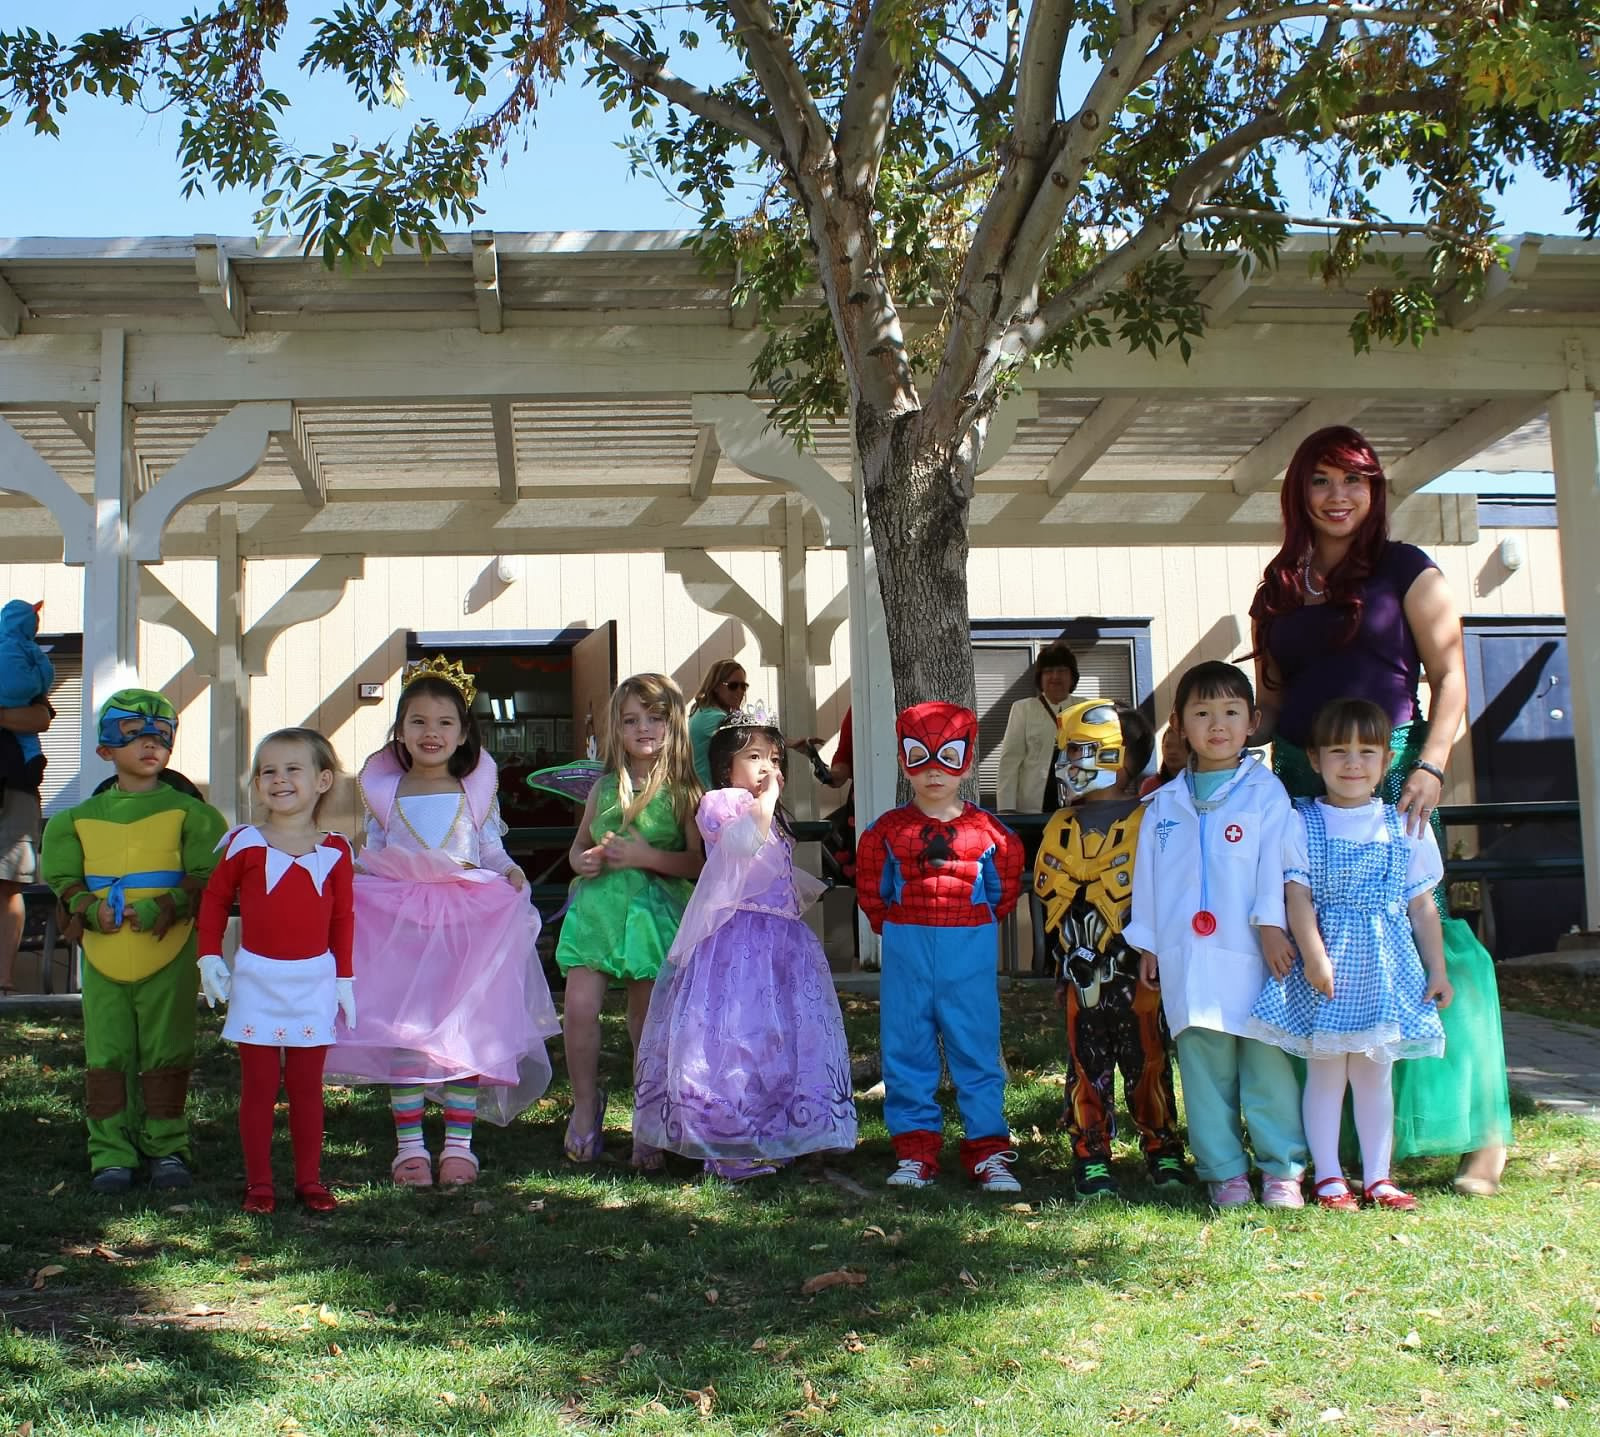 Halloween Party Ideas For Kindergarten Classes
 Preschool For Rookies Preschool Halloween Party